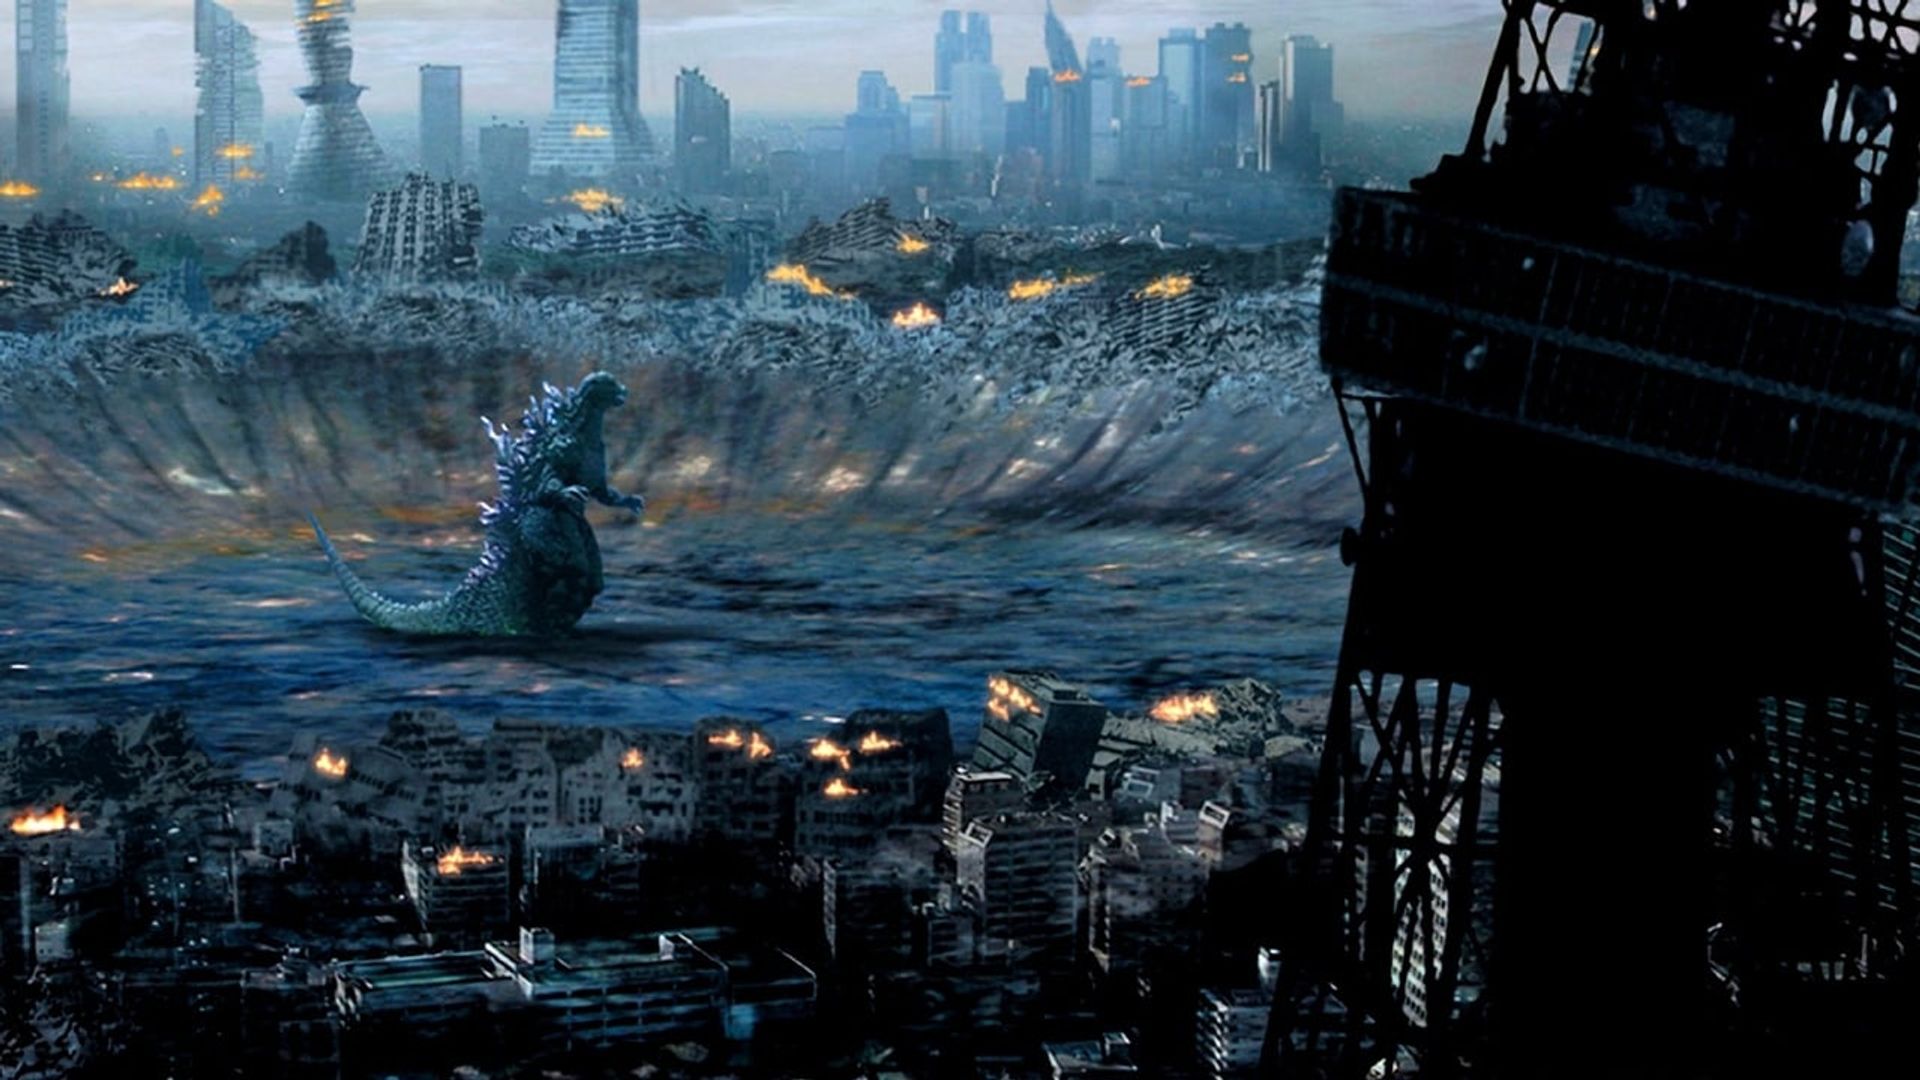 Godzilla: Final Wars background